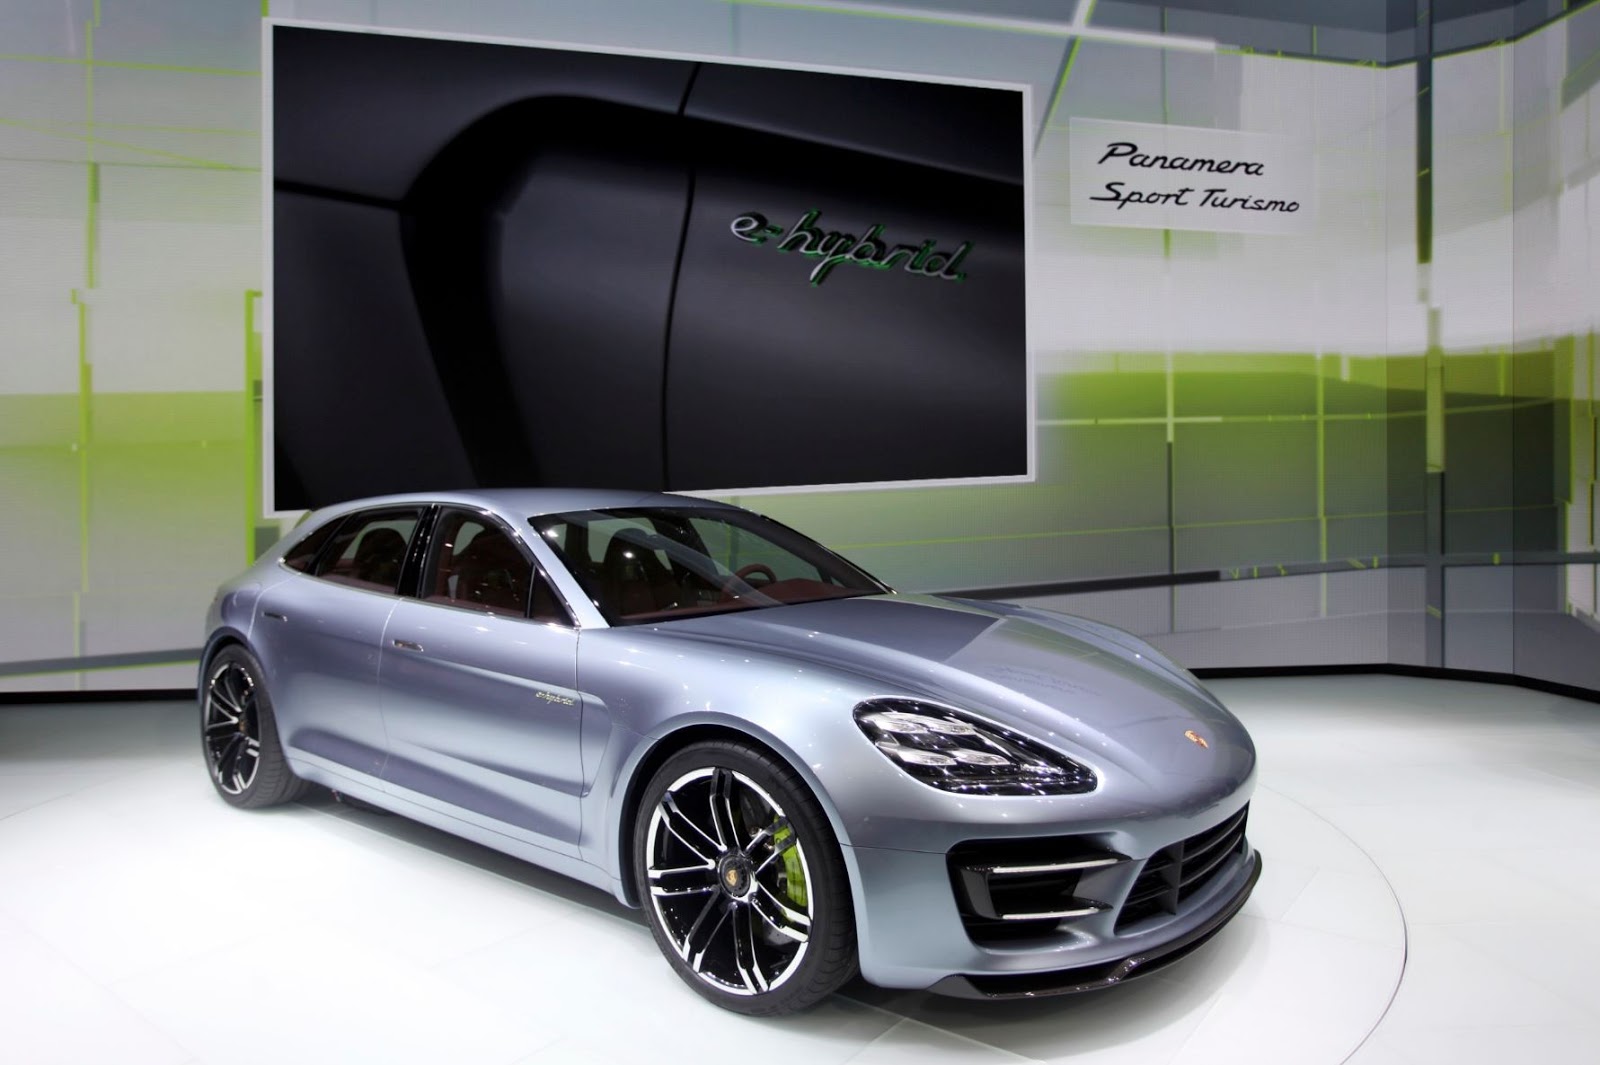 Porsche Panamera Station Wagon será lançado em 2017